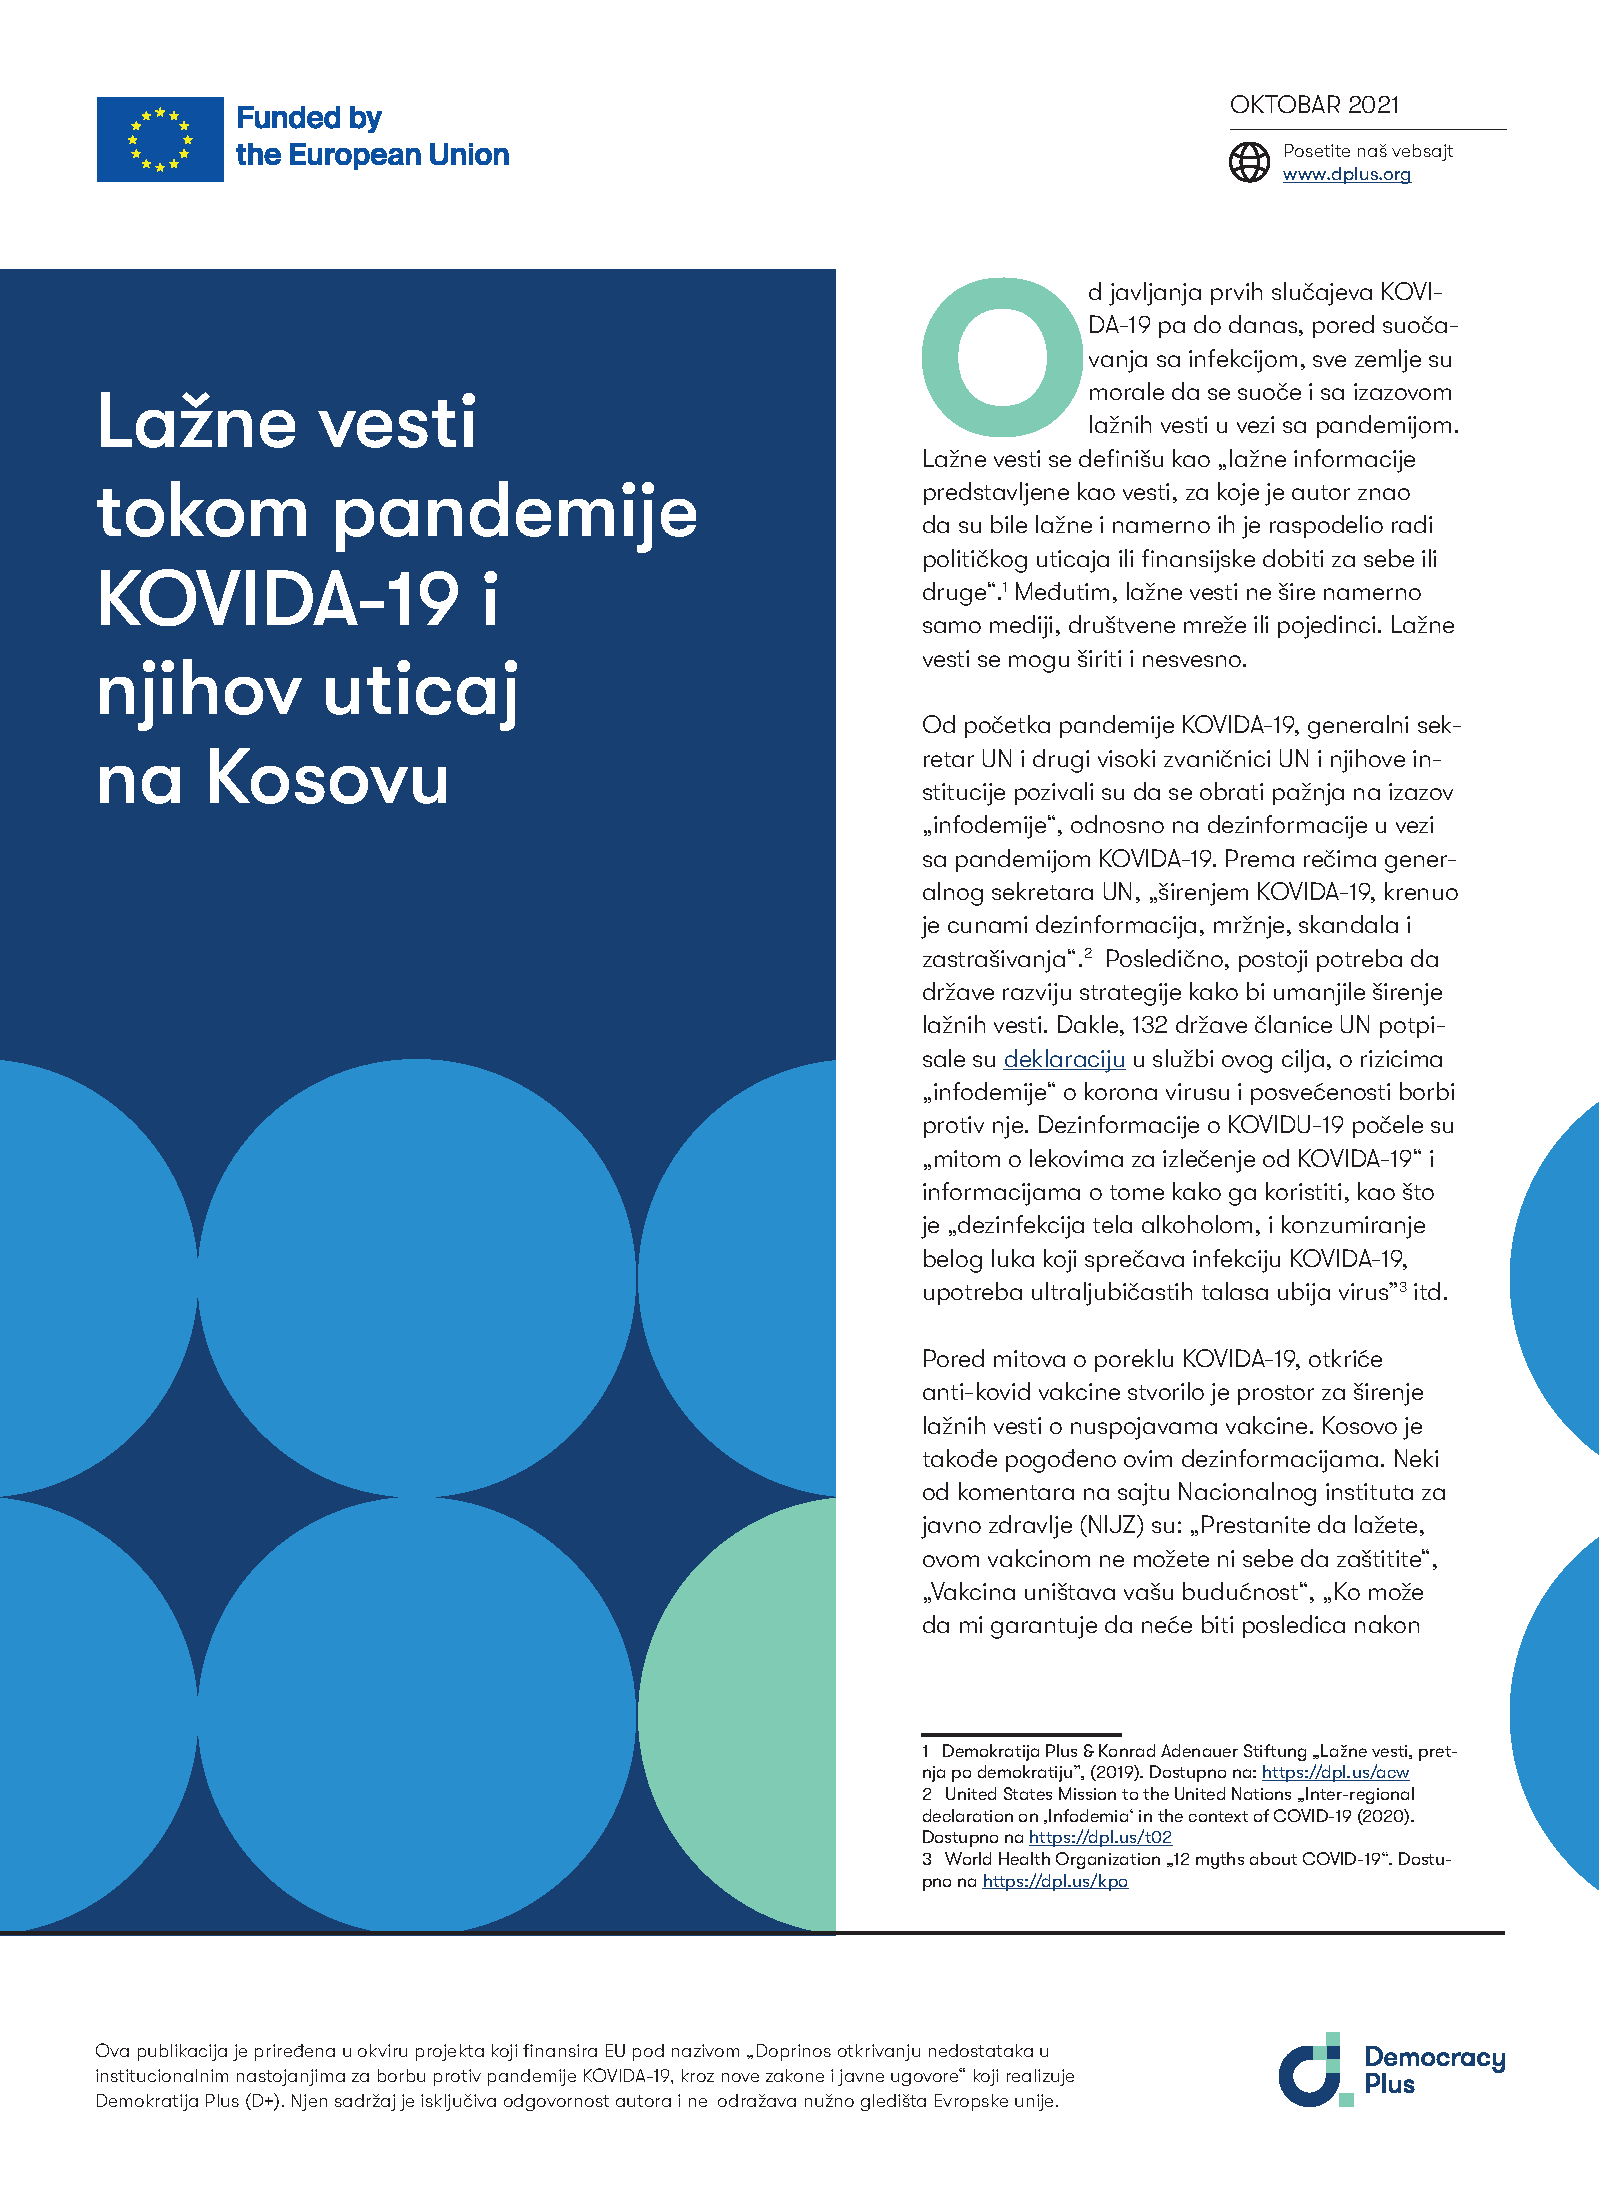 Lažne vesti tokom pandemije KOVIDA-19 i njihov uticaj na Kosovu